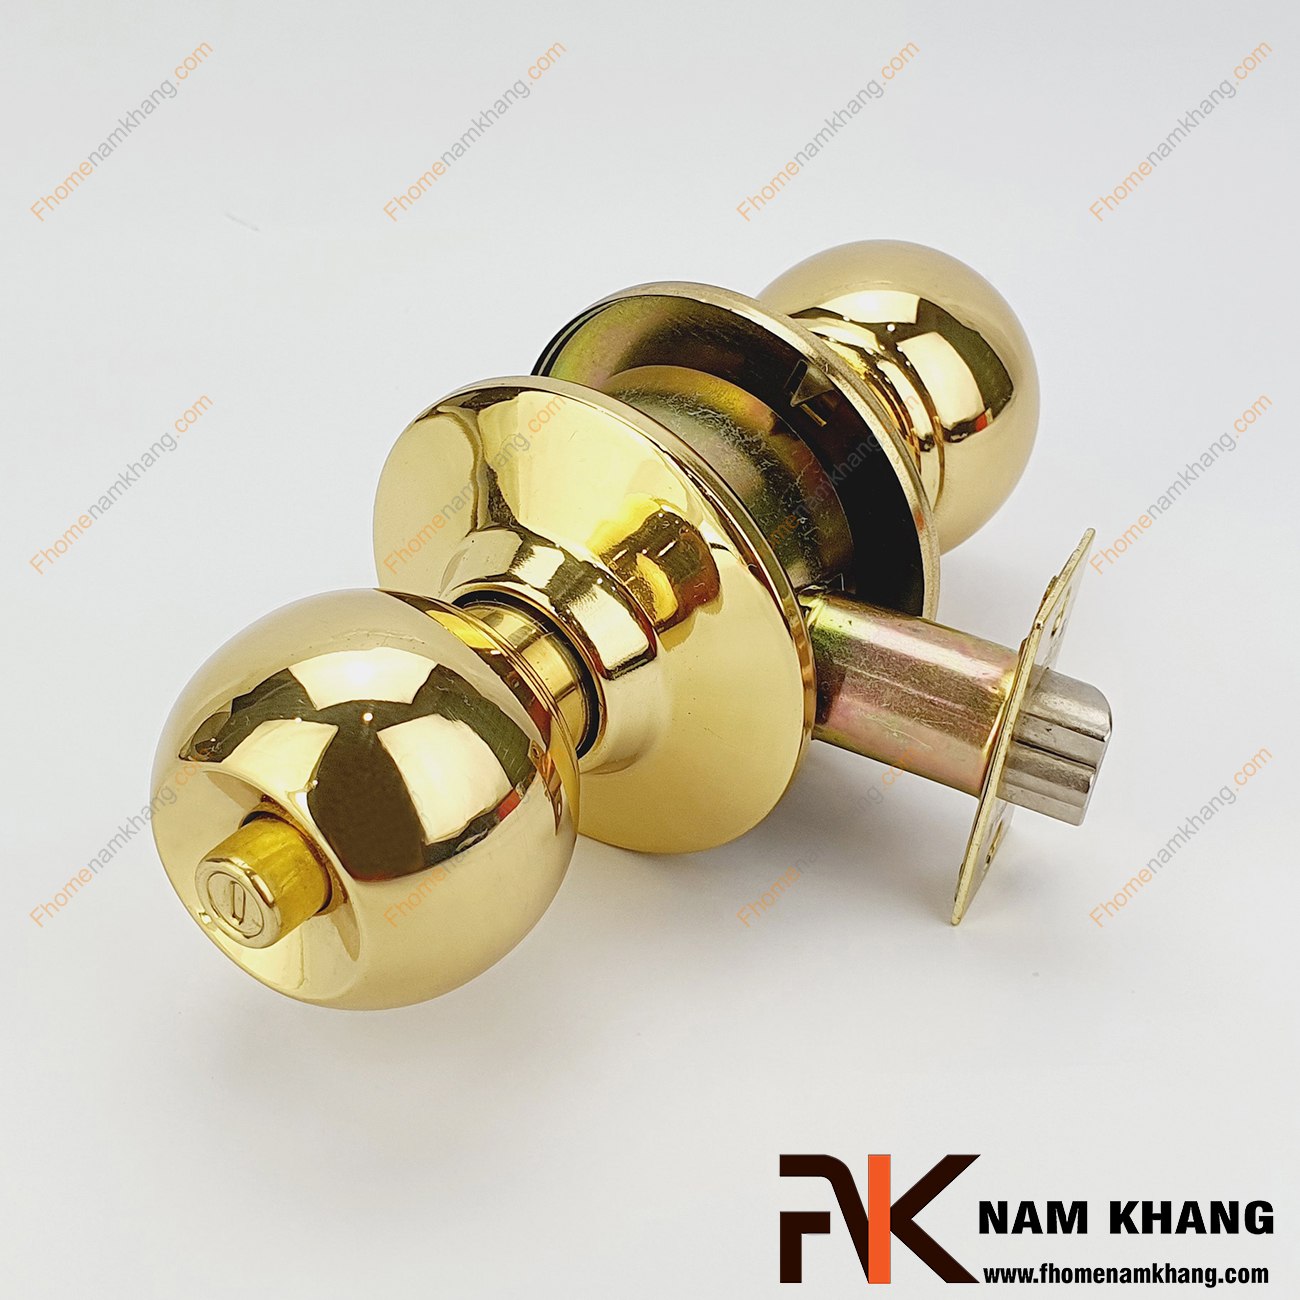 Khóa tay nắm tròn màu vàng bóng NK430HAFELE-V được sản xuất từ inox cao cấp. Dòng khóa này có thiết kế dạng tay nắm tròn như quả đấm vừa tay của một người trưởng thành.